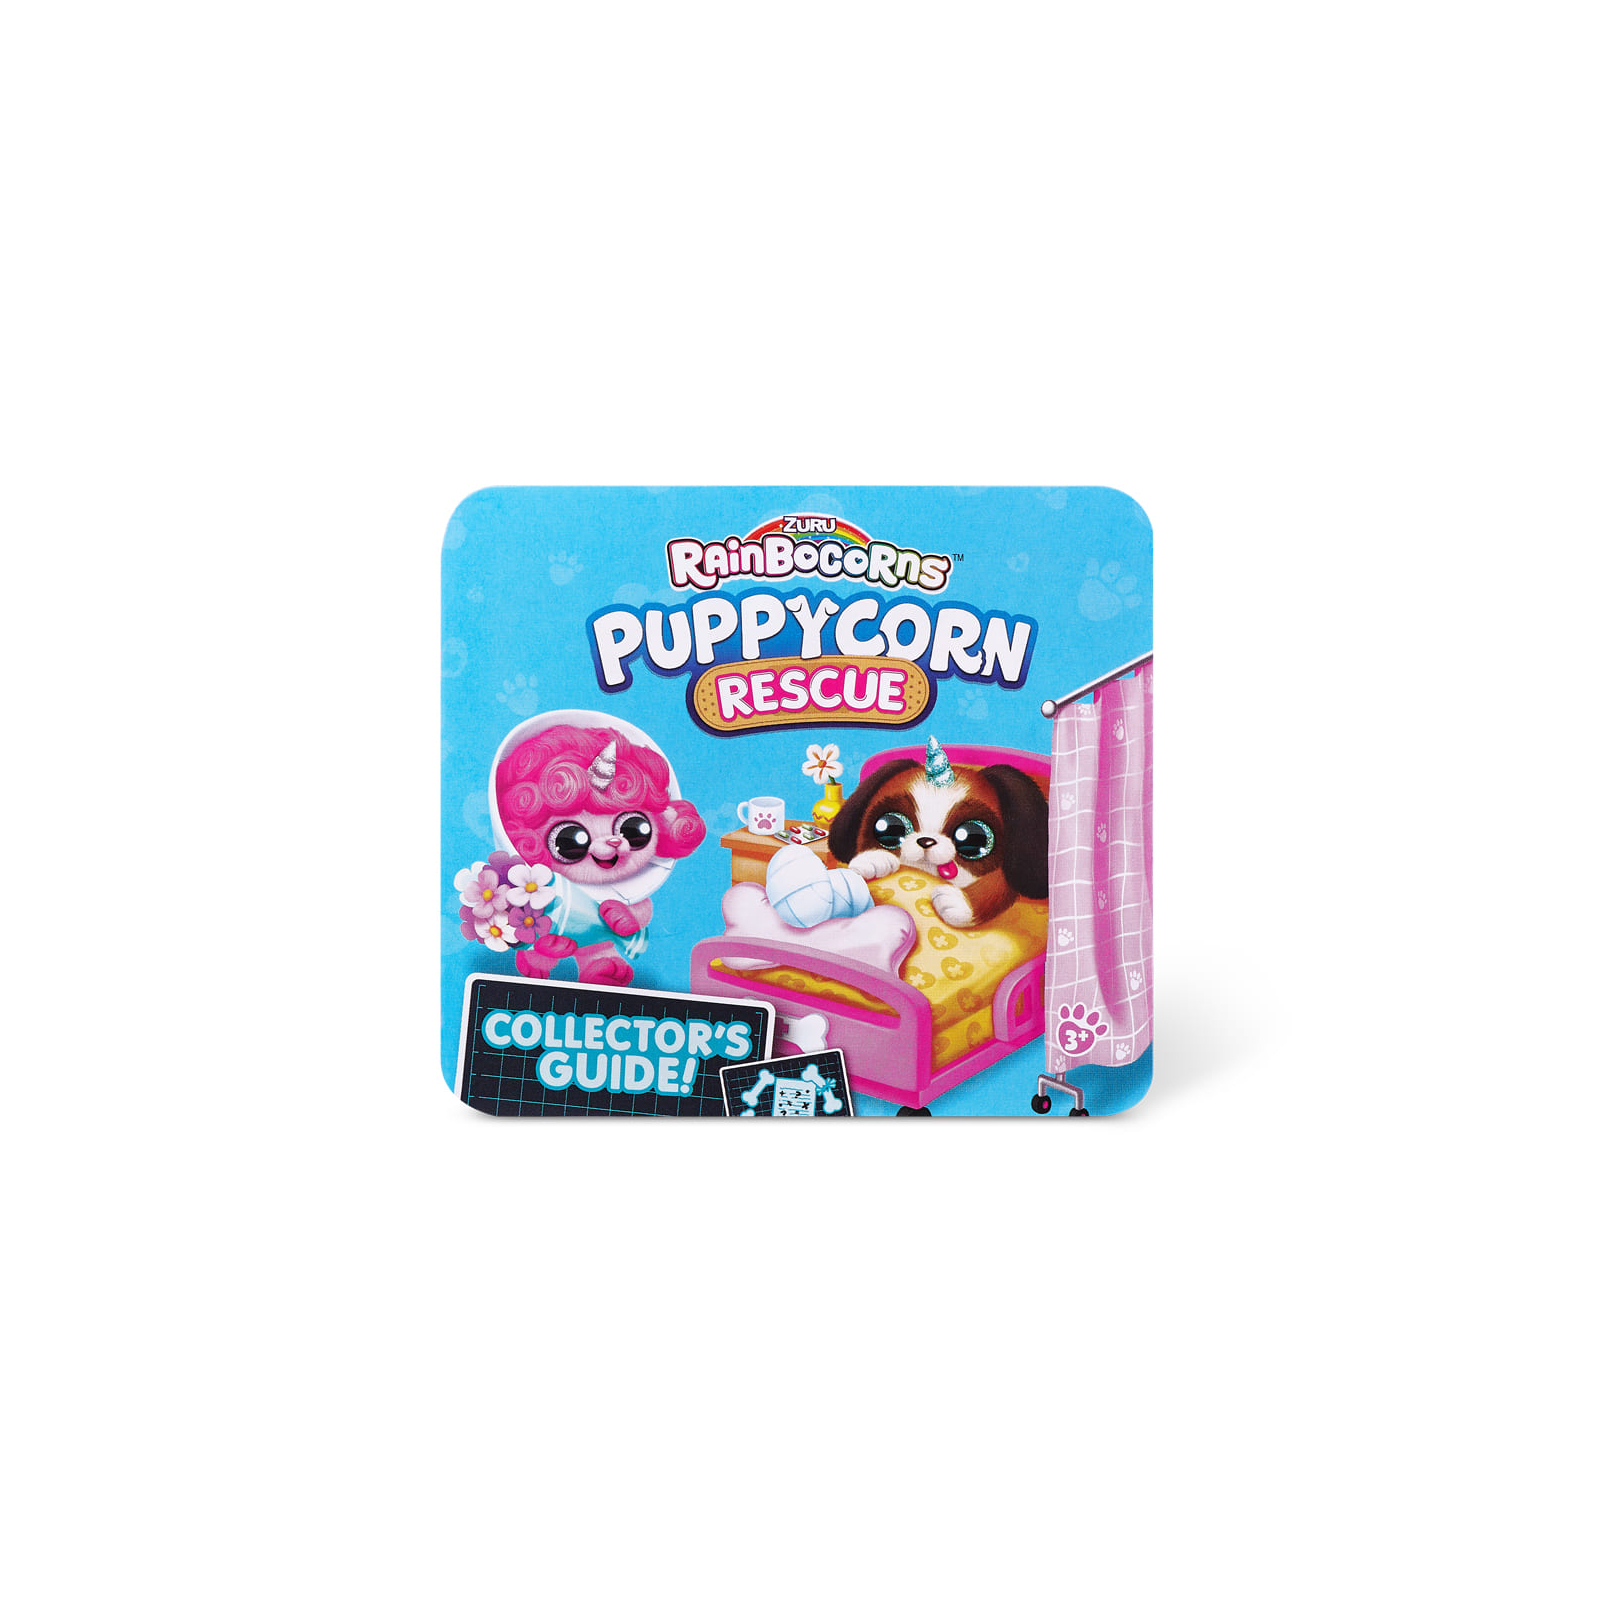 Мягкая игрушка Rainbocorns сюрприз E серия Puppycorn Rescue (9261E) изображение 13